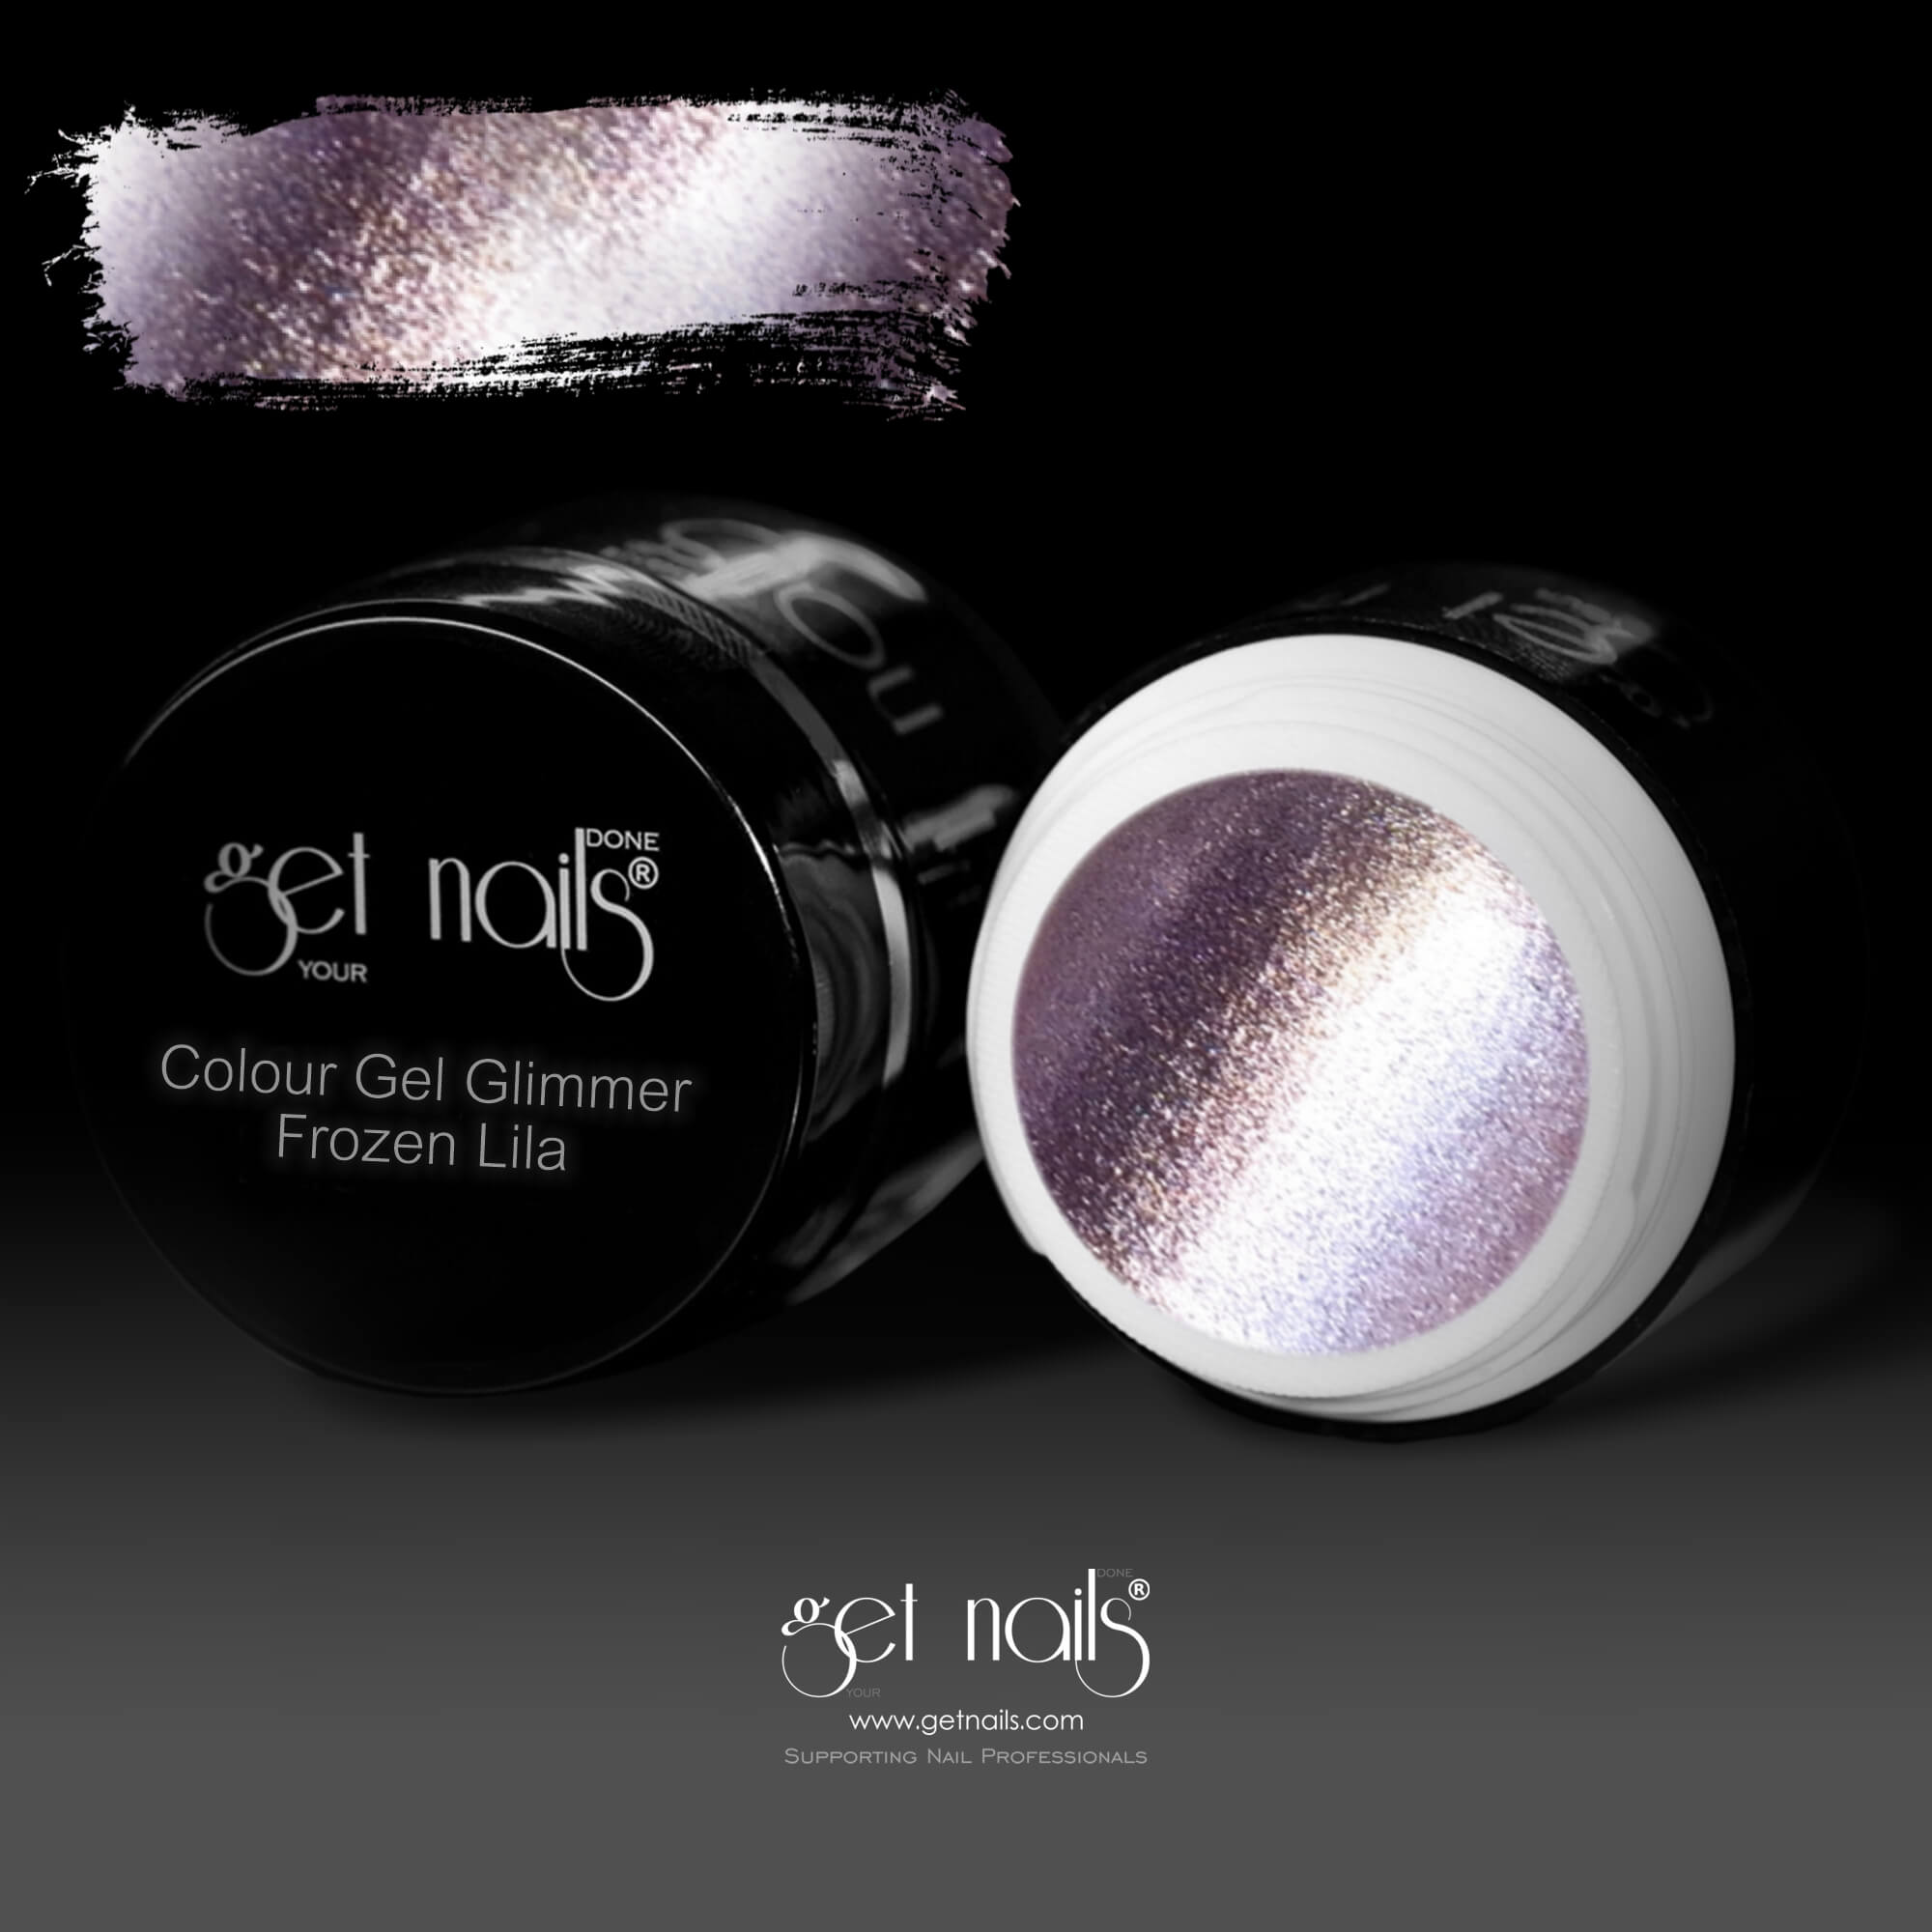 Get Nails Austria - Colour Gel Glimmer Frozen Purple 5g